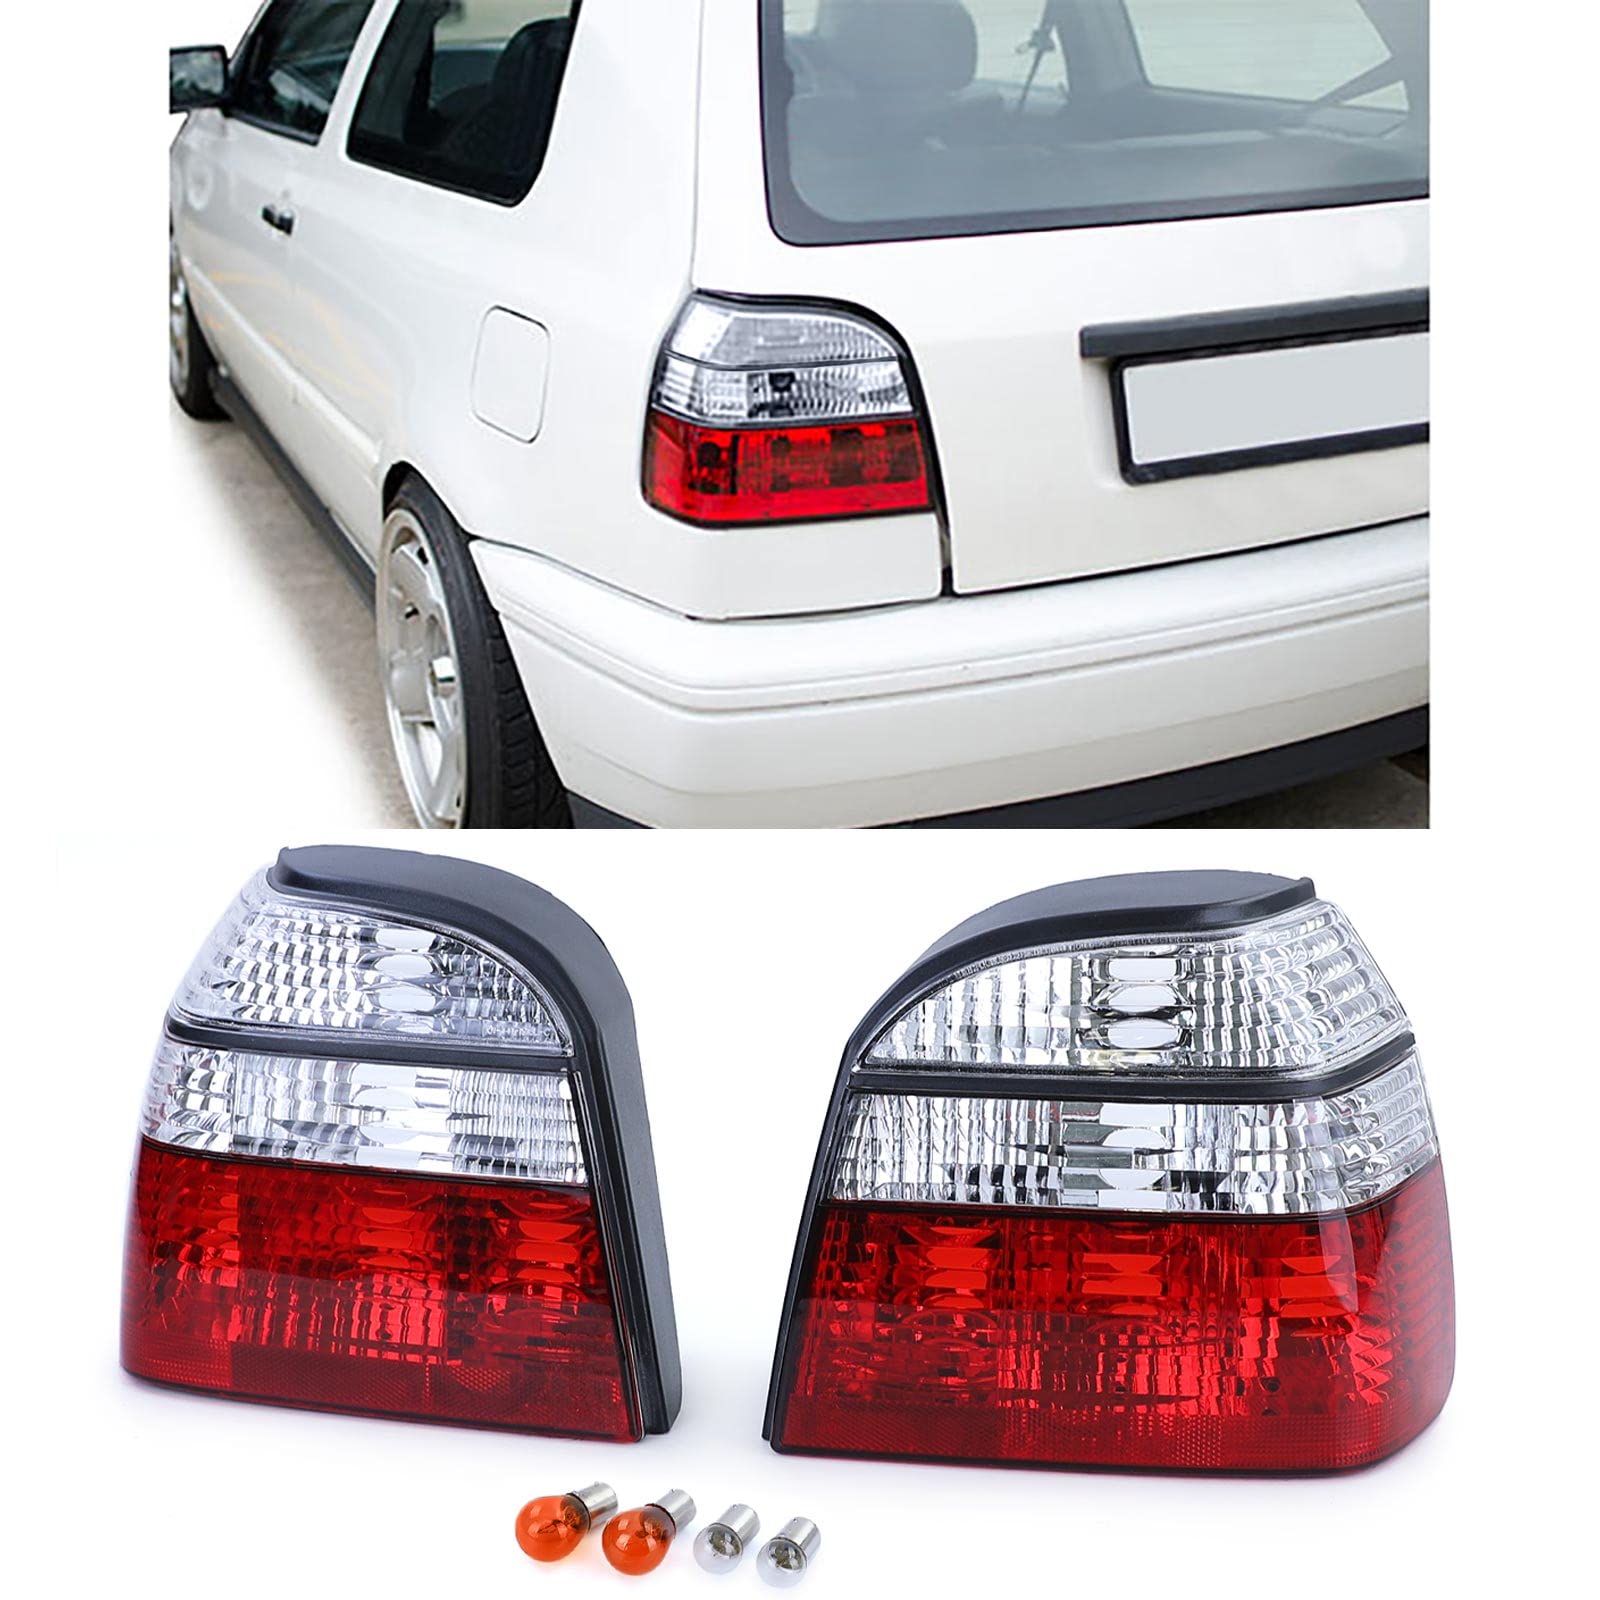 Tenzo-R Klarglas Rückleuchten Rot Weiss für VW Golf 3 Limousine Cabrio 91-97 von Tenzo-R